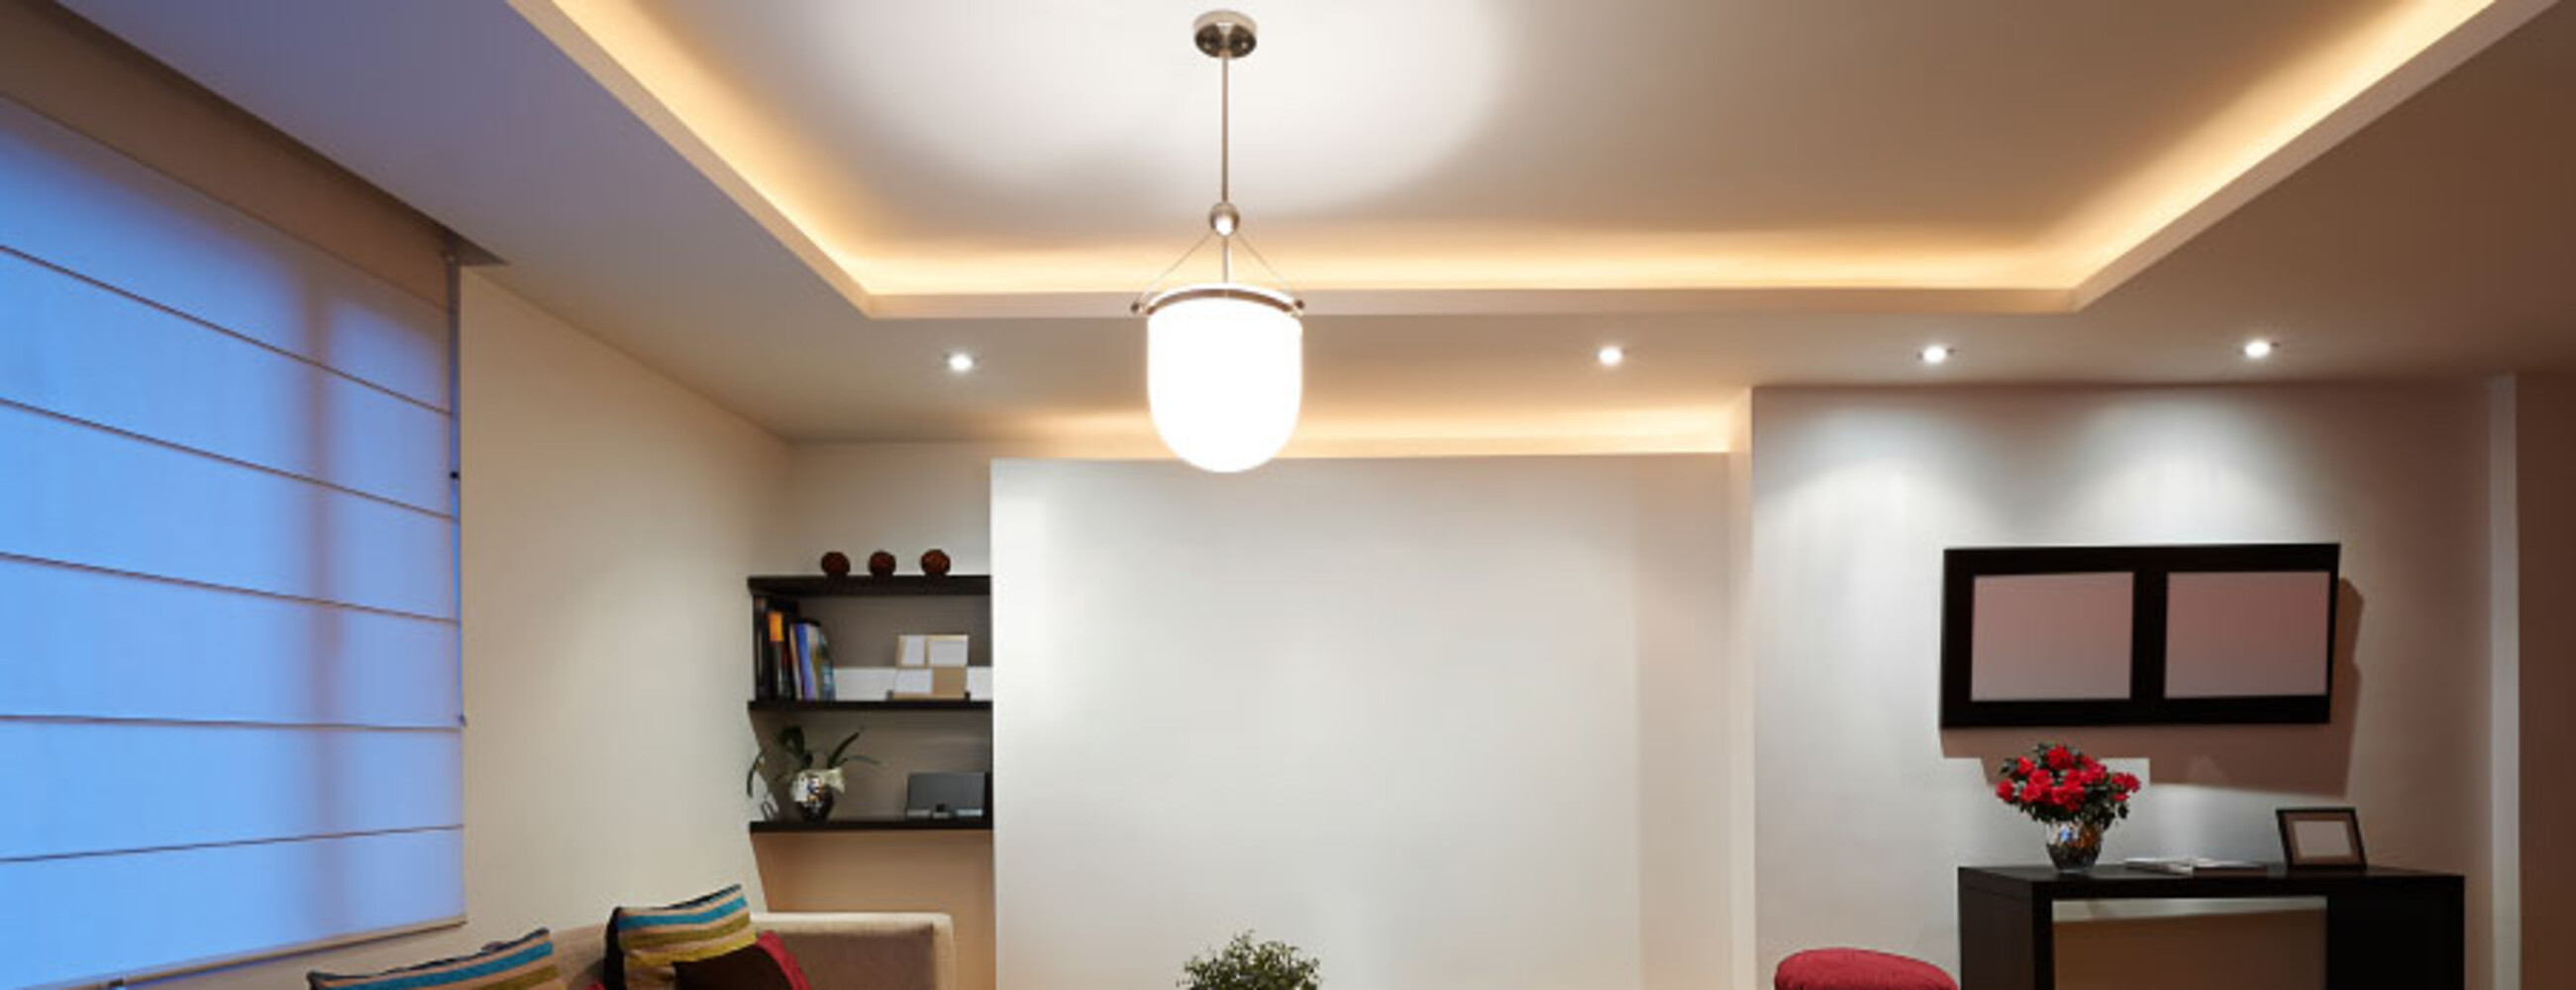 hochwertiger, leistungsfähiger, warmweißer LED Streifen von LED Universum mit Smart Home Funktionen und optionalem Funksteuerungs-Feature